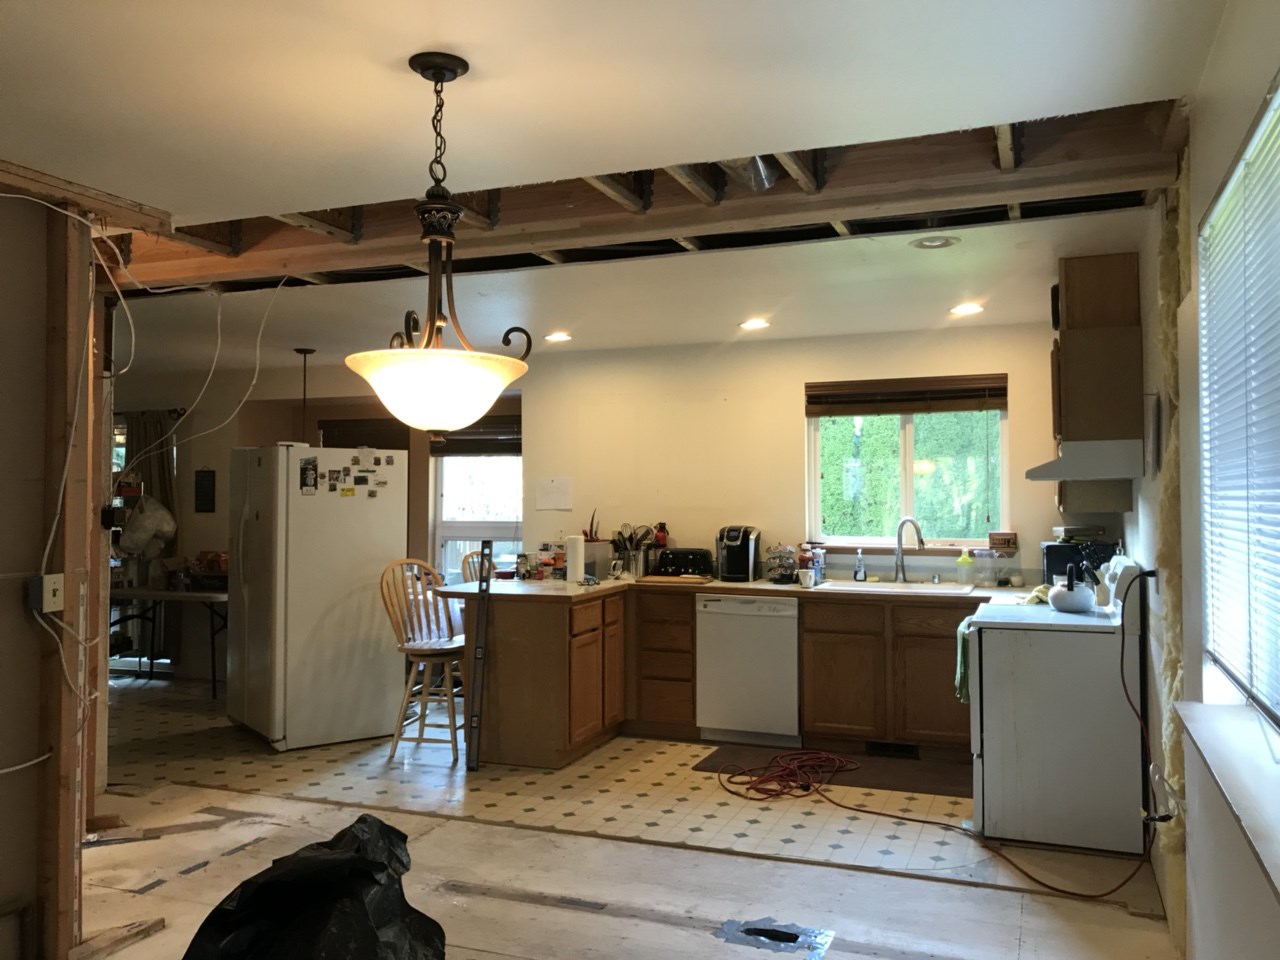 Kitchen Demolition In-Progress